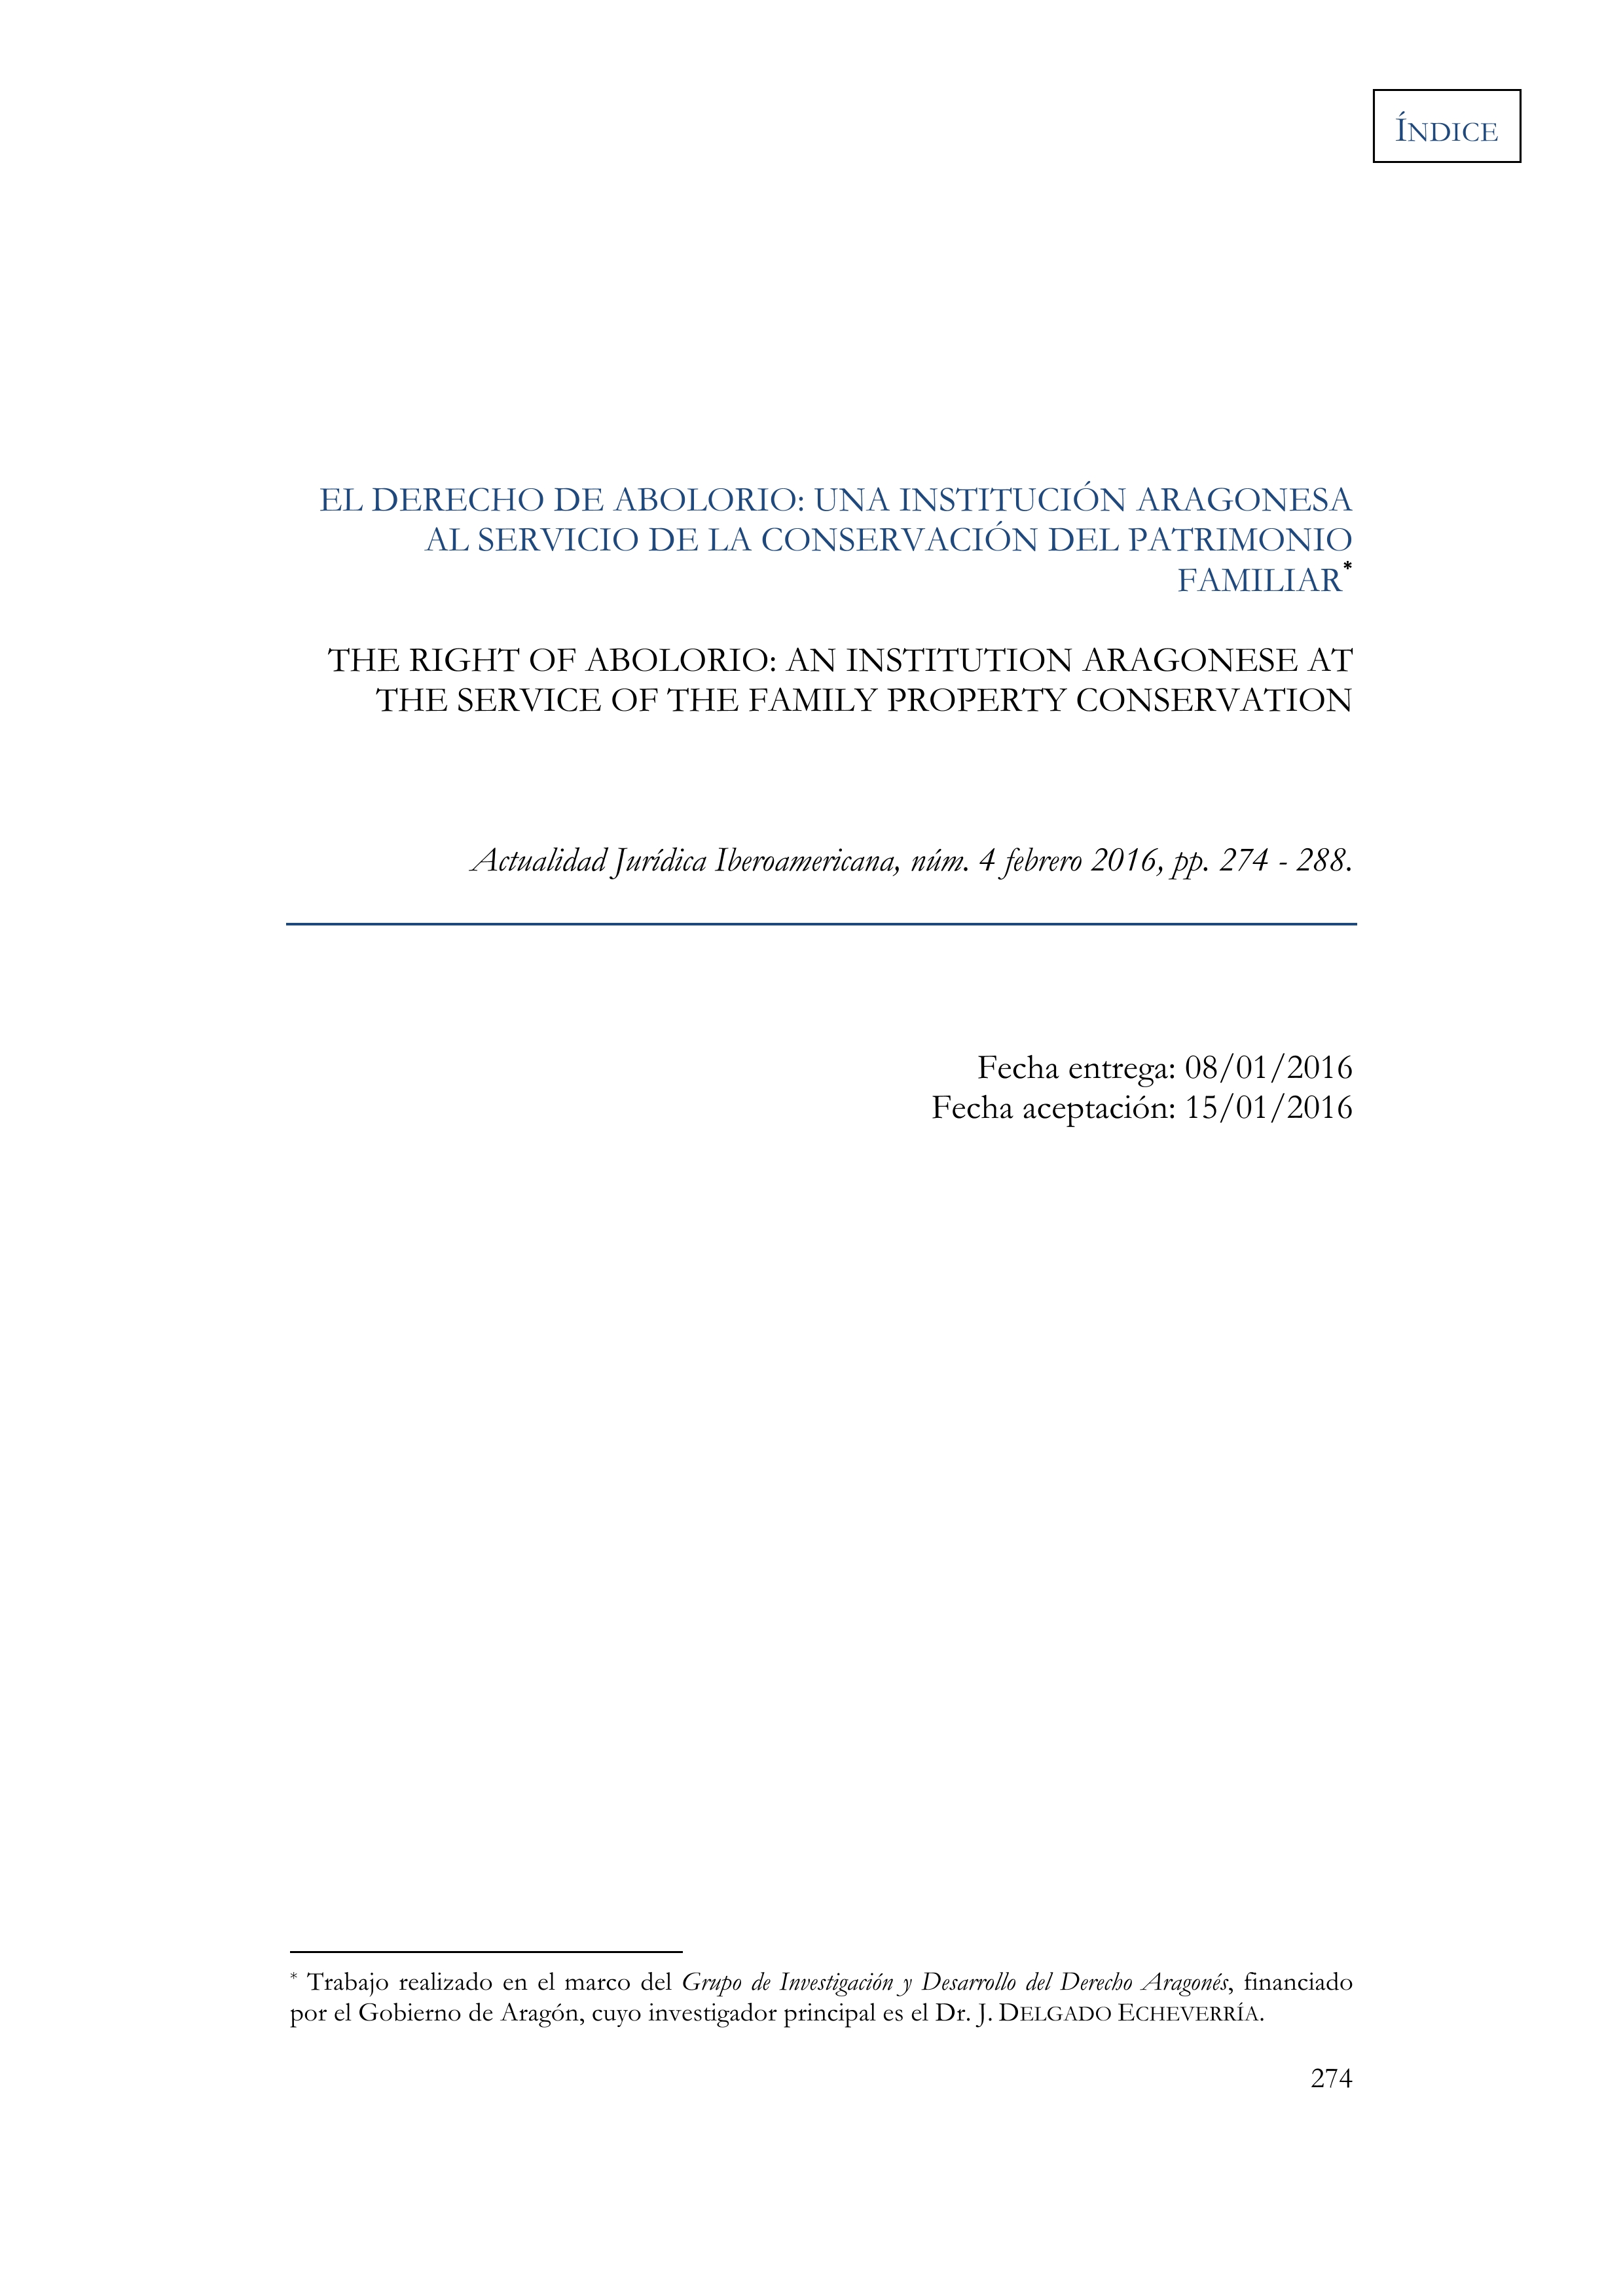 El derecho de abolorio: una institución aragonesa al servicio de la conservación del patrimonio familiar